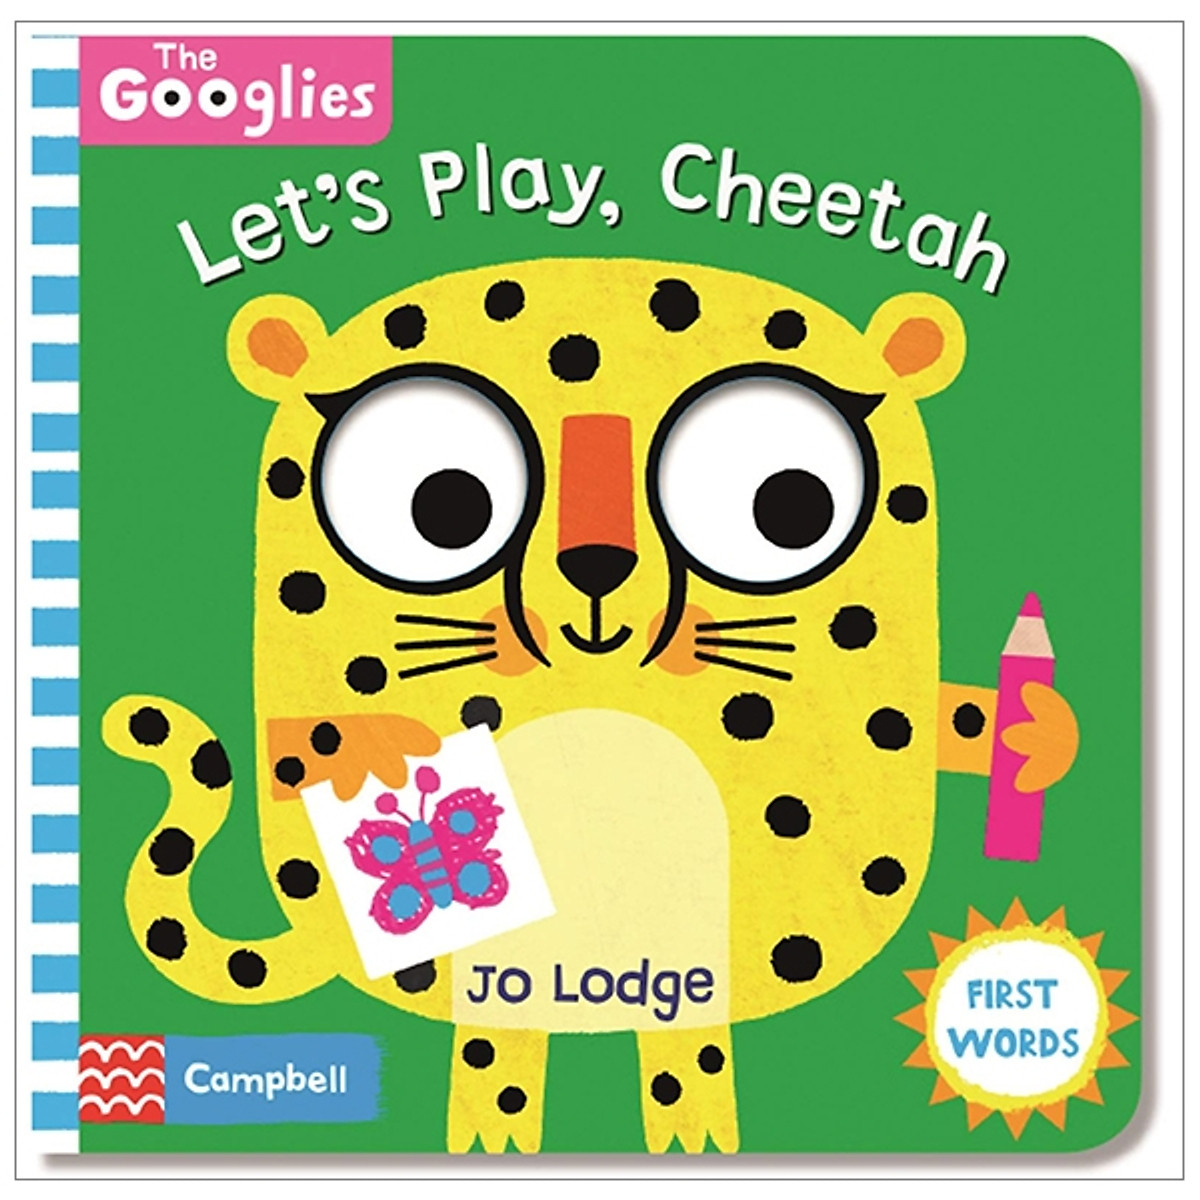 The Googlies: Let's Play, Cheetah